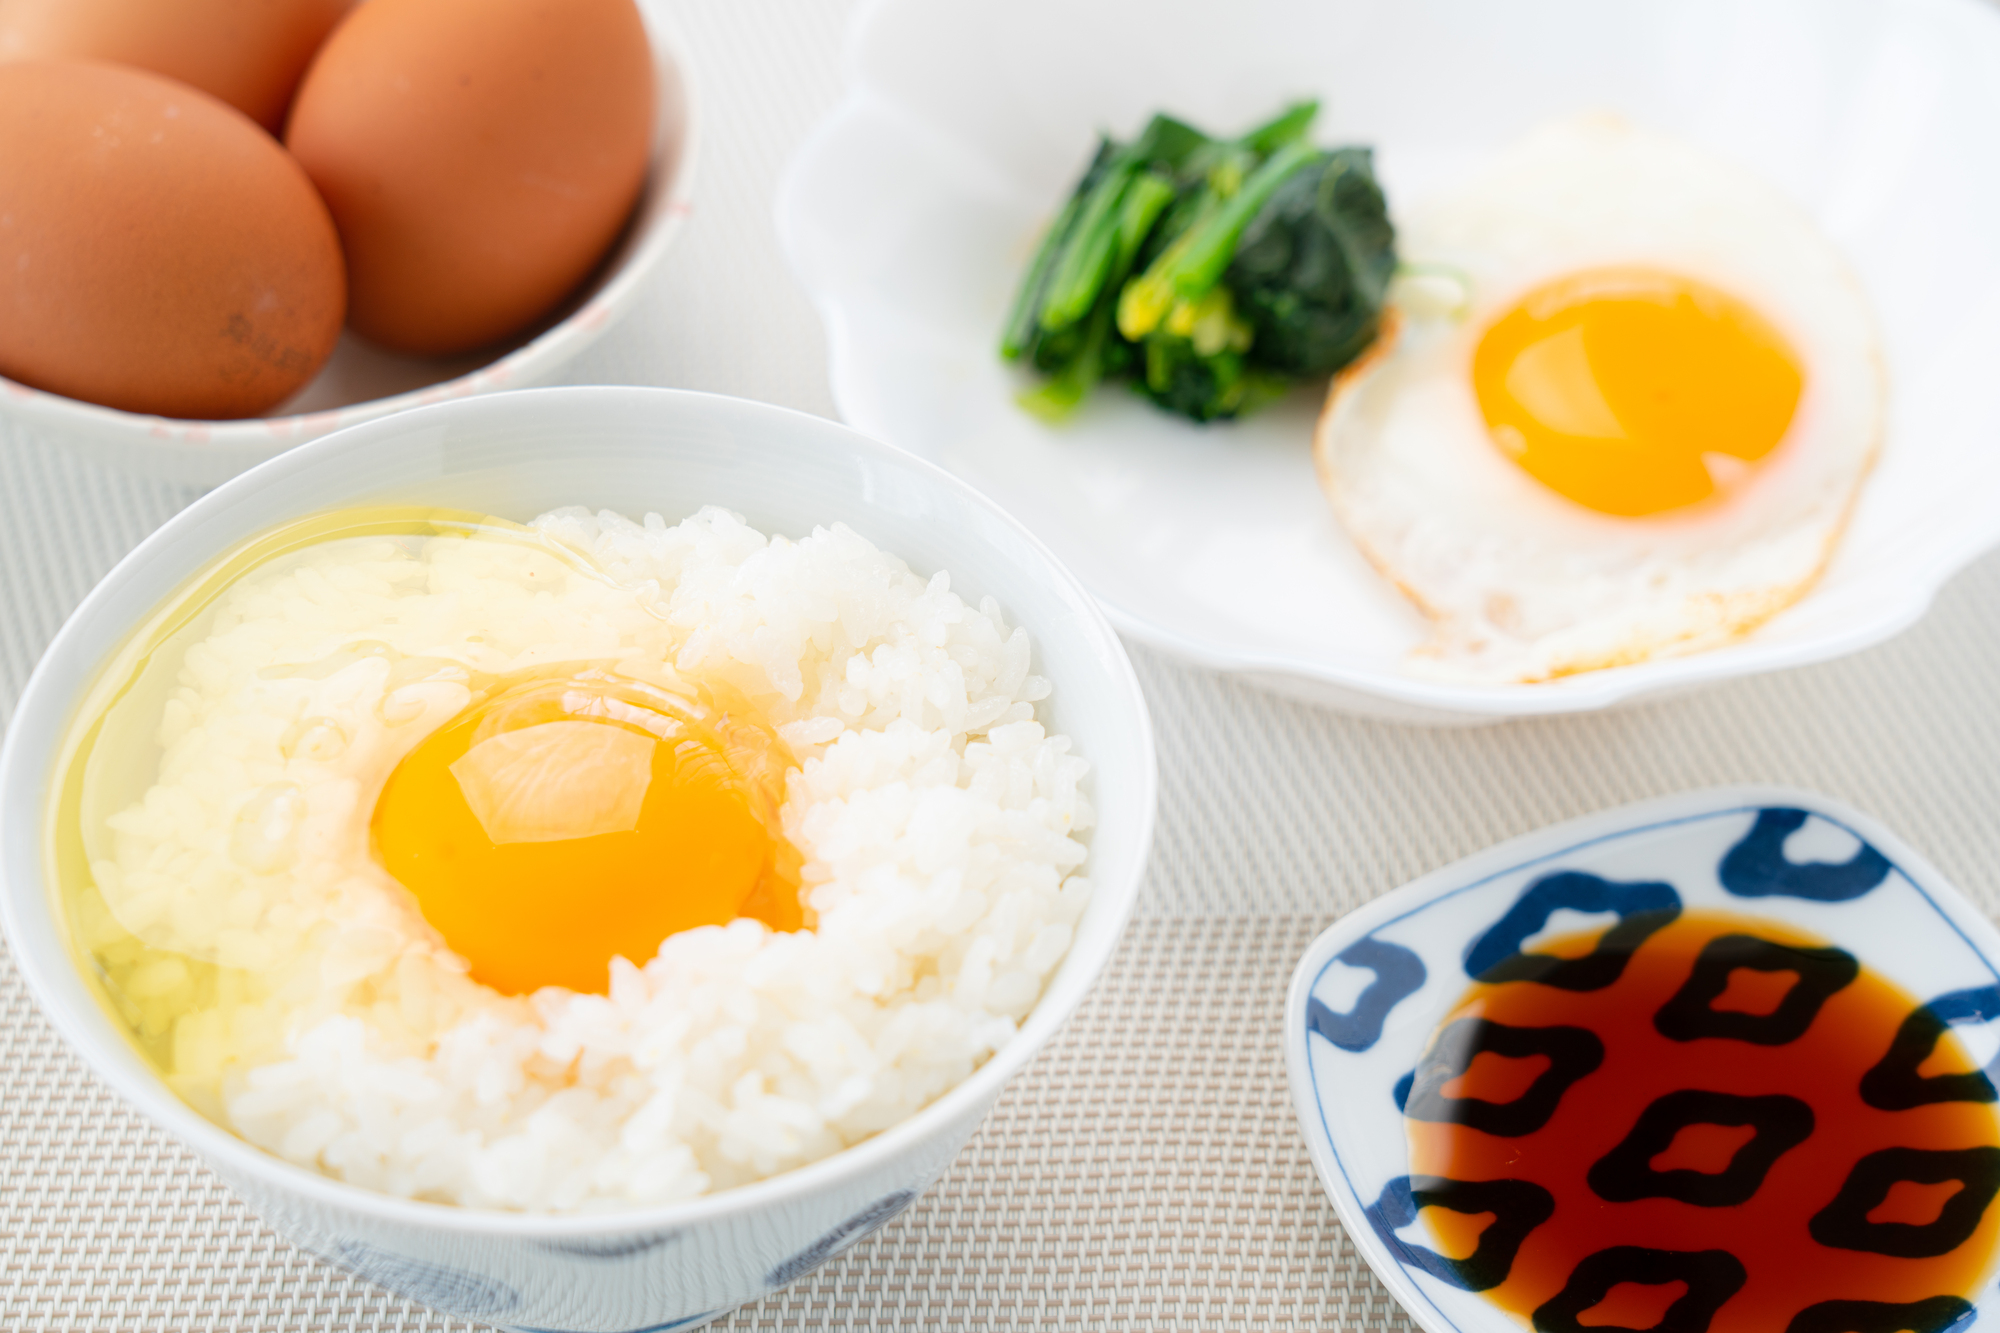 Bạn nên lên thực đơn 7 ngày ăn trứng giảm cân nhanh chóng và hiệu quả tại nhà